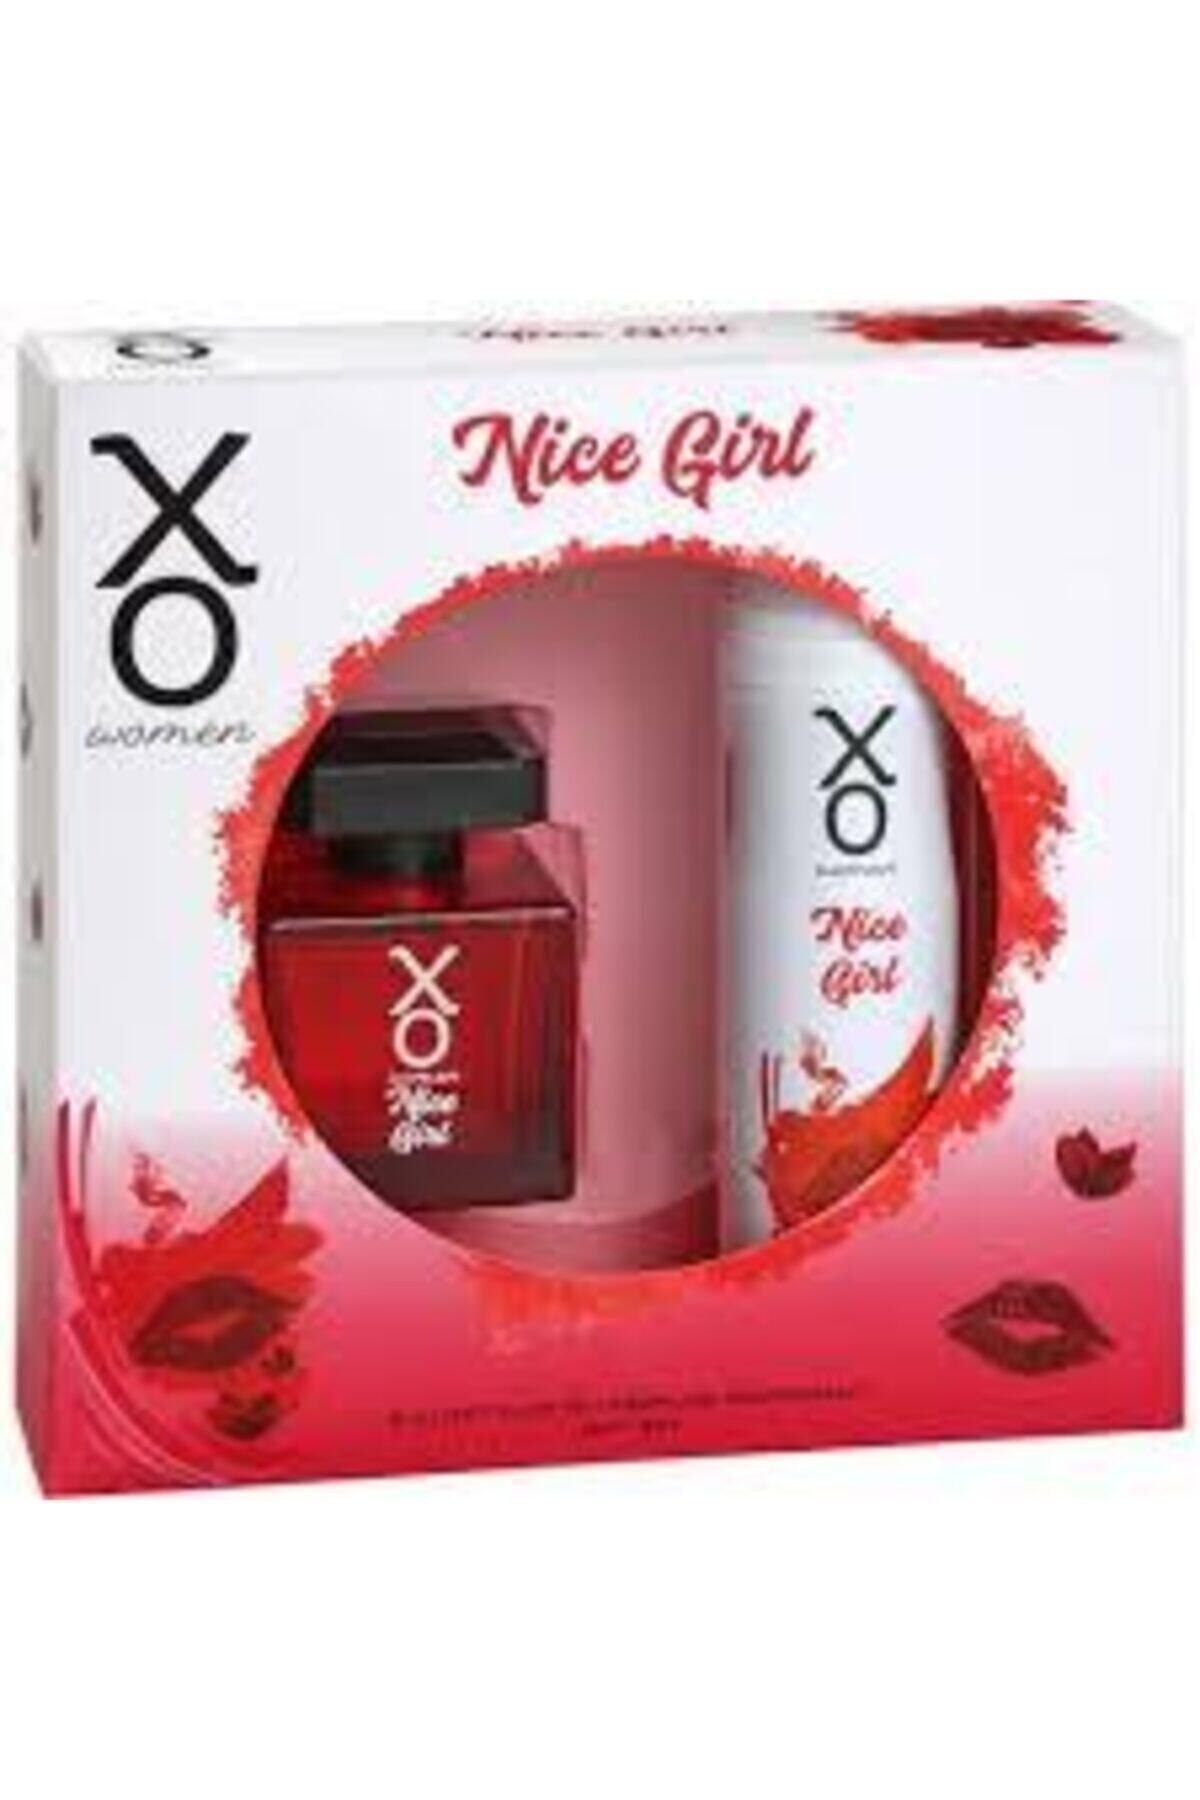 Xo Nice Girl Edt 100ml Kadın Parfüm + 125ml Deodorant Set 8690605054860